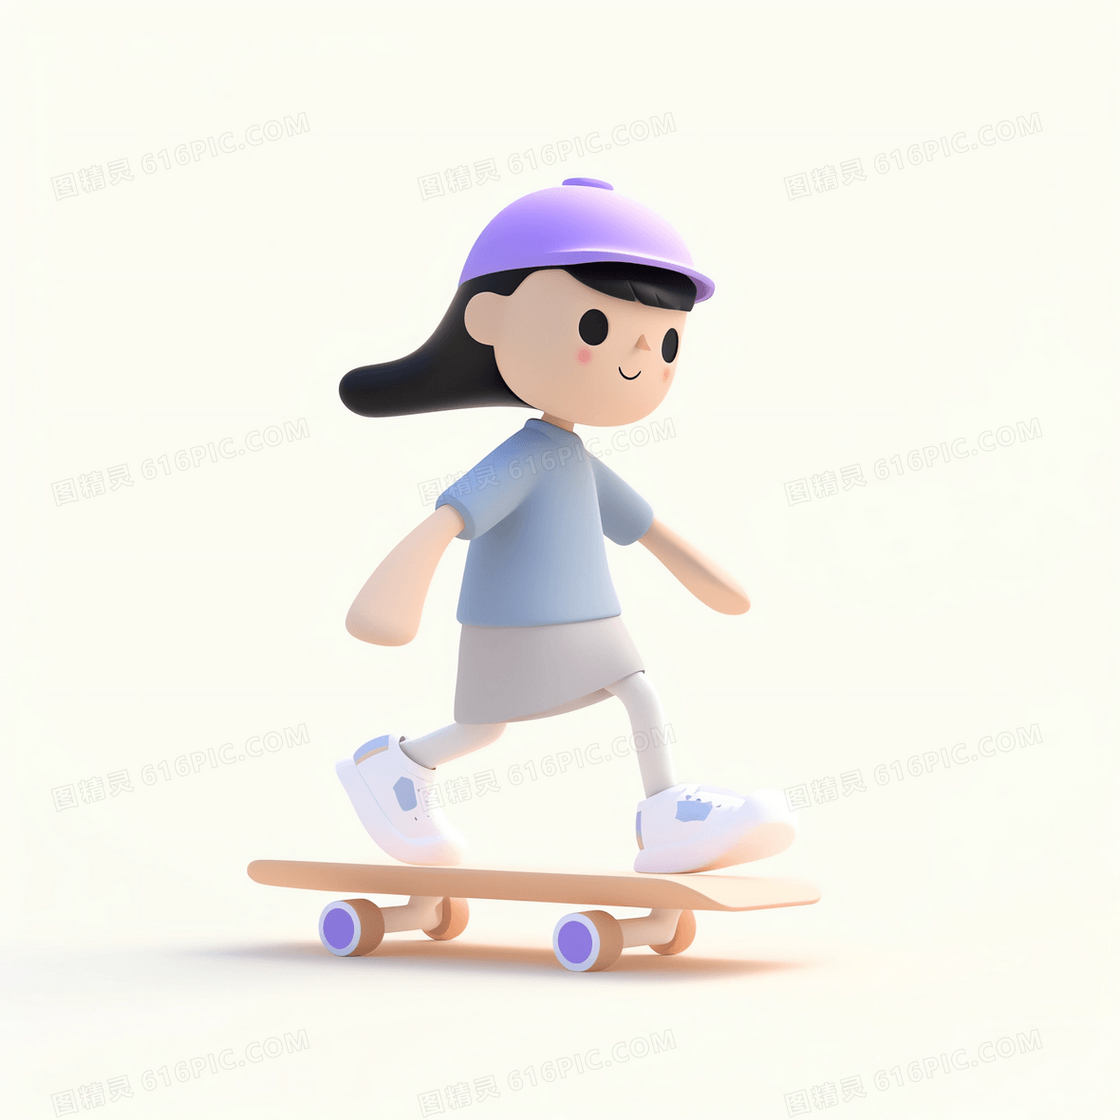 在滑板上惯性滑行的可爱女孩3D模型